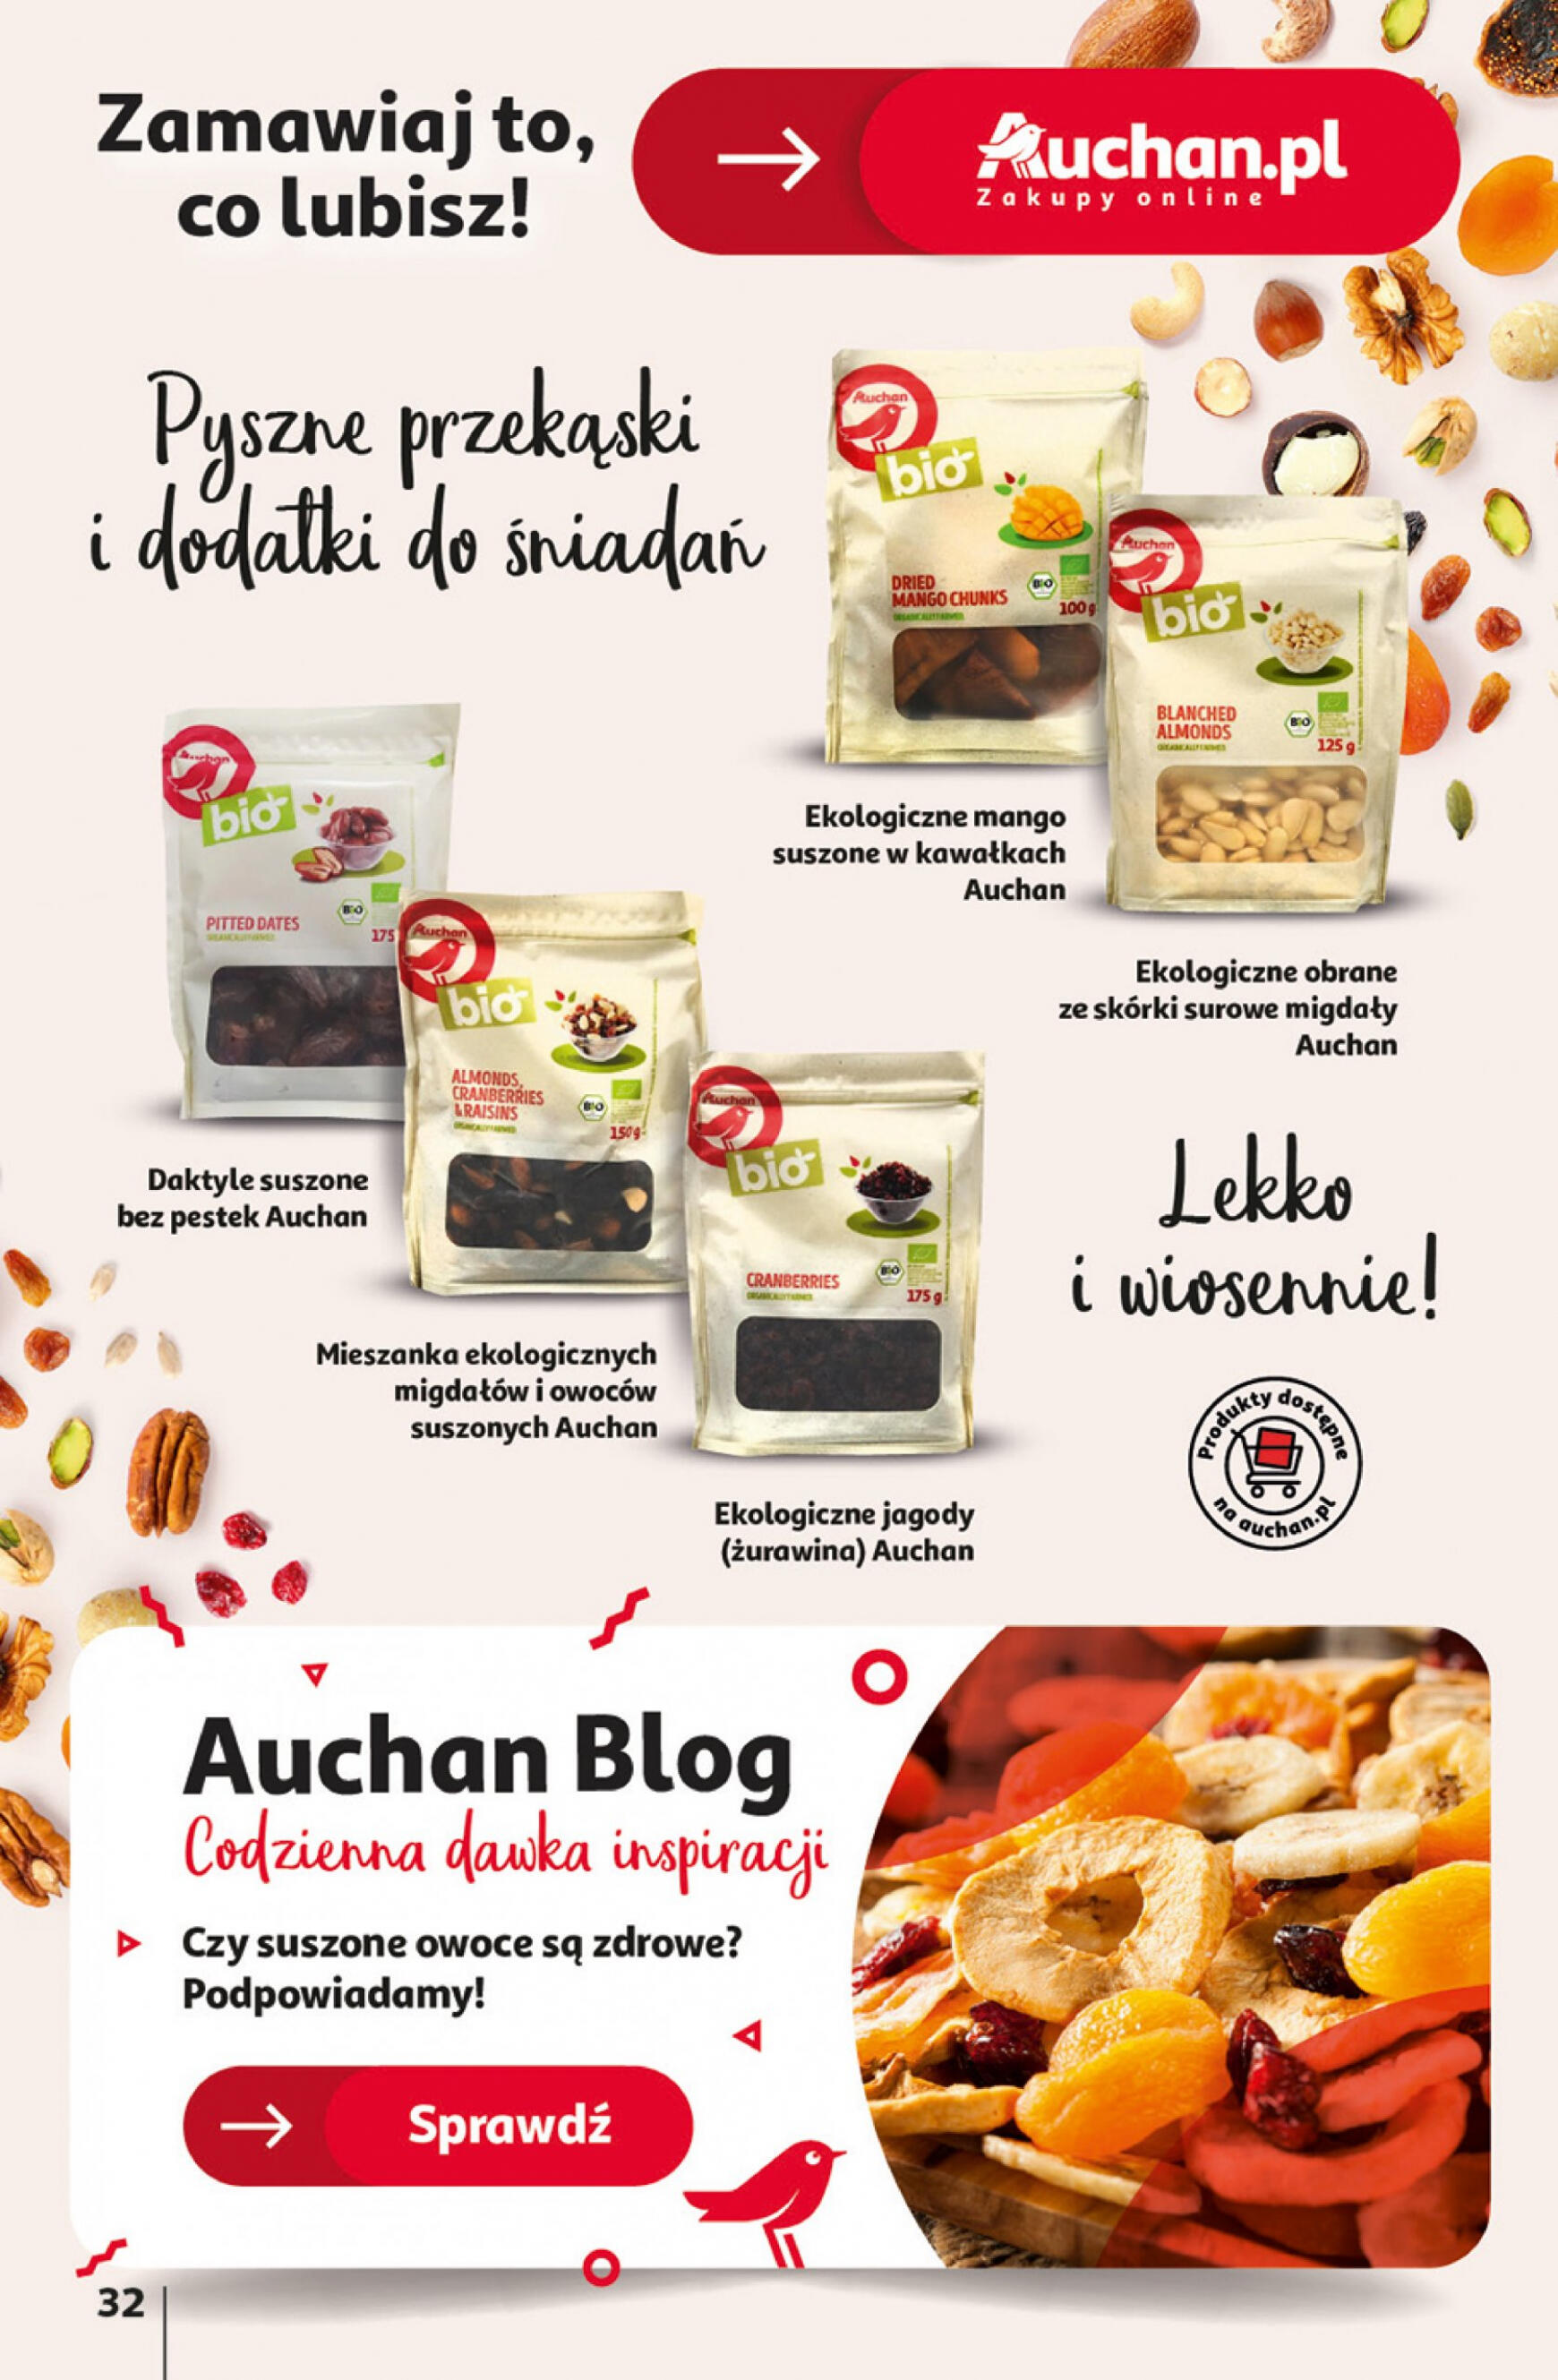 auchan - Hipermarket Auchan - Gazetka Aktywność na świeżym powietrzu! gazetka aktualna ważna od 11.04. - 17.04. - page: 32